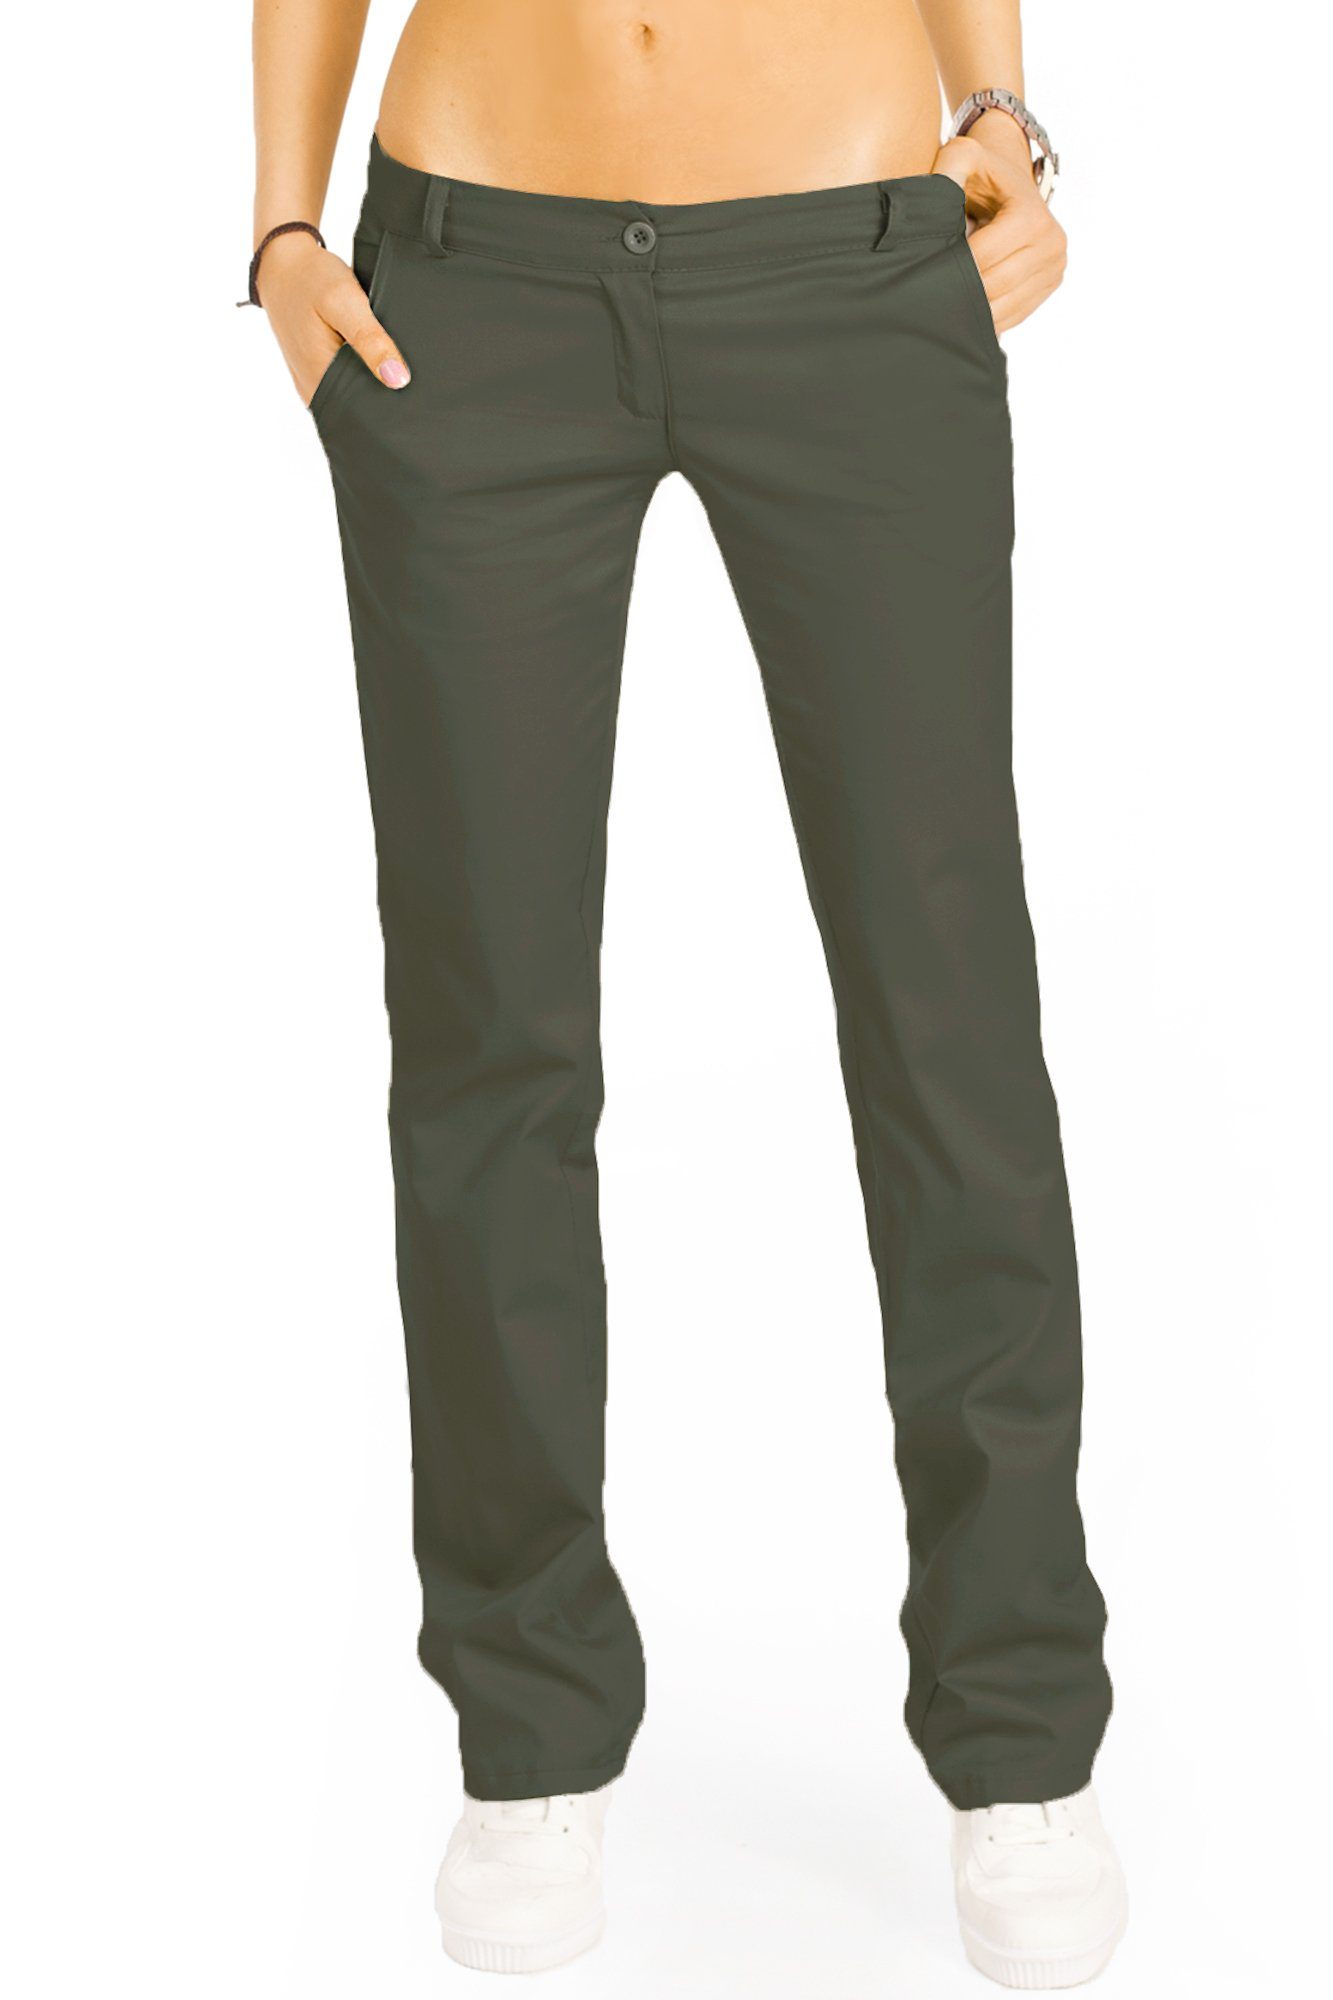 be styled Bootcuthose low waist Damenhosen, ausgestellte Hüfthose in vielen Farben j20k khaki